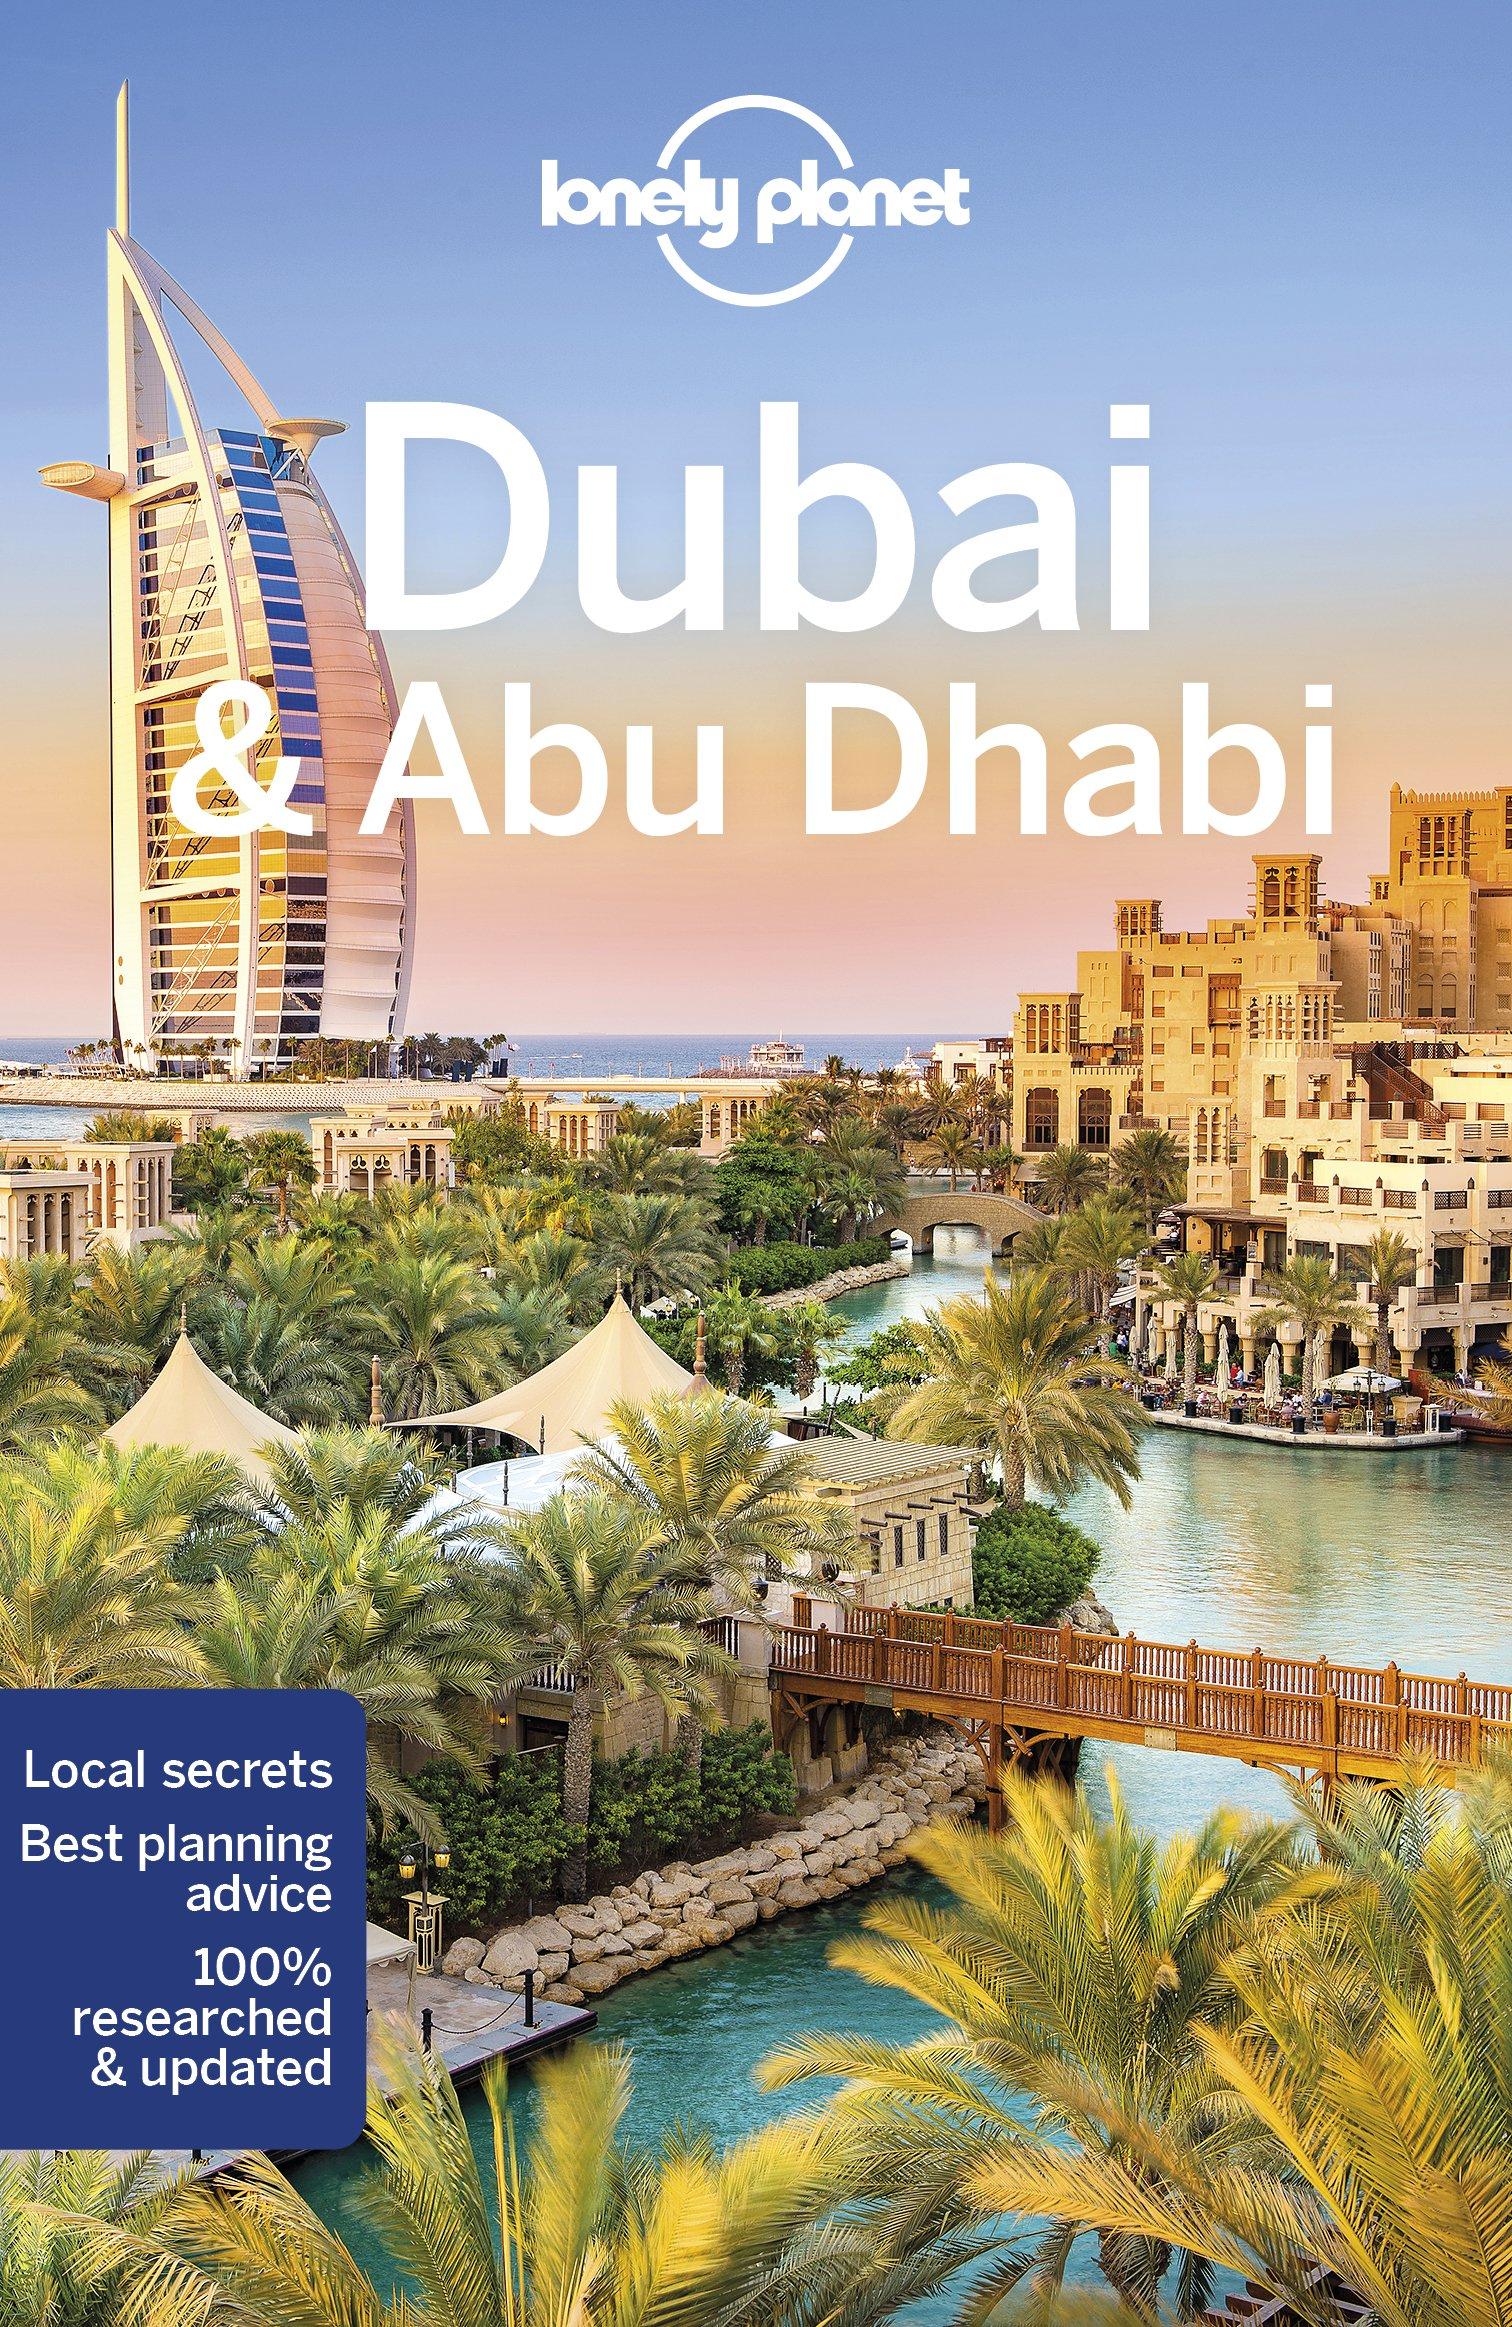 Lonely Planet: Dubai & Abu Dhabi